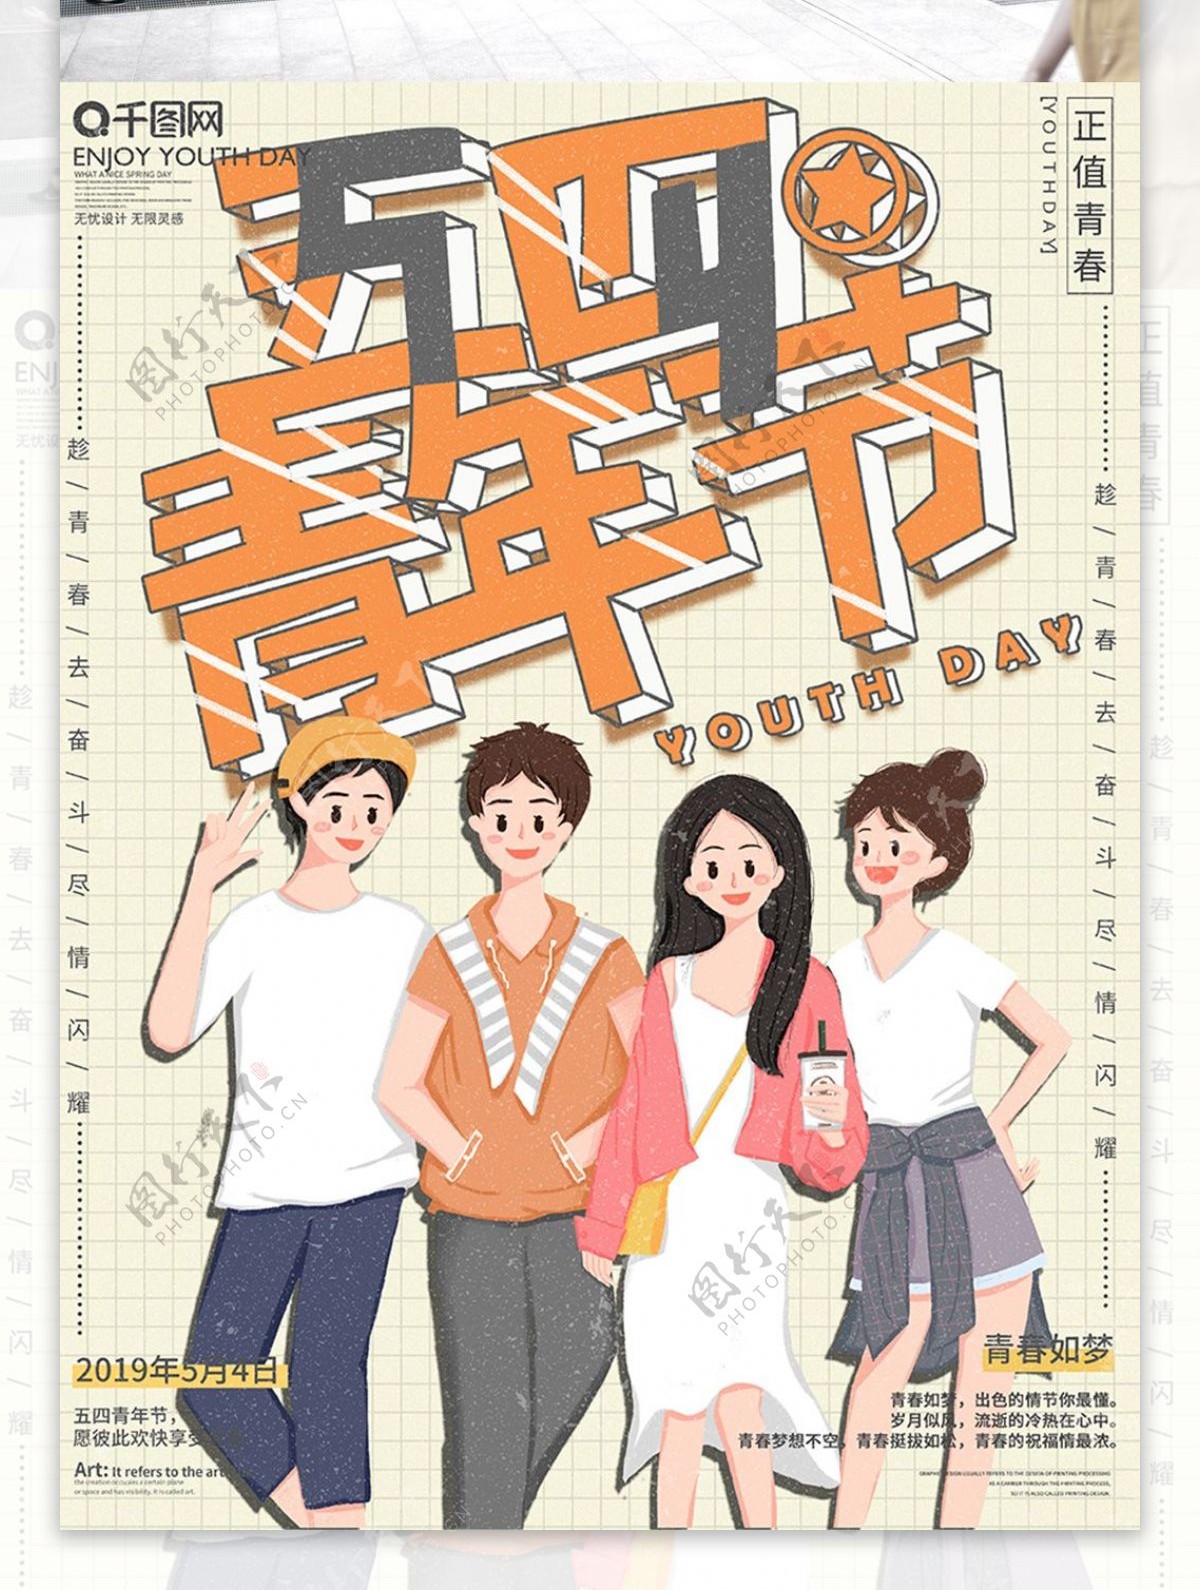 原创手绘五四青年节节日宣传海报